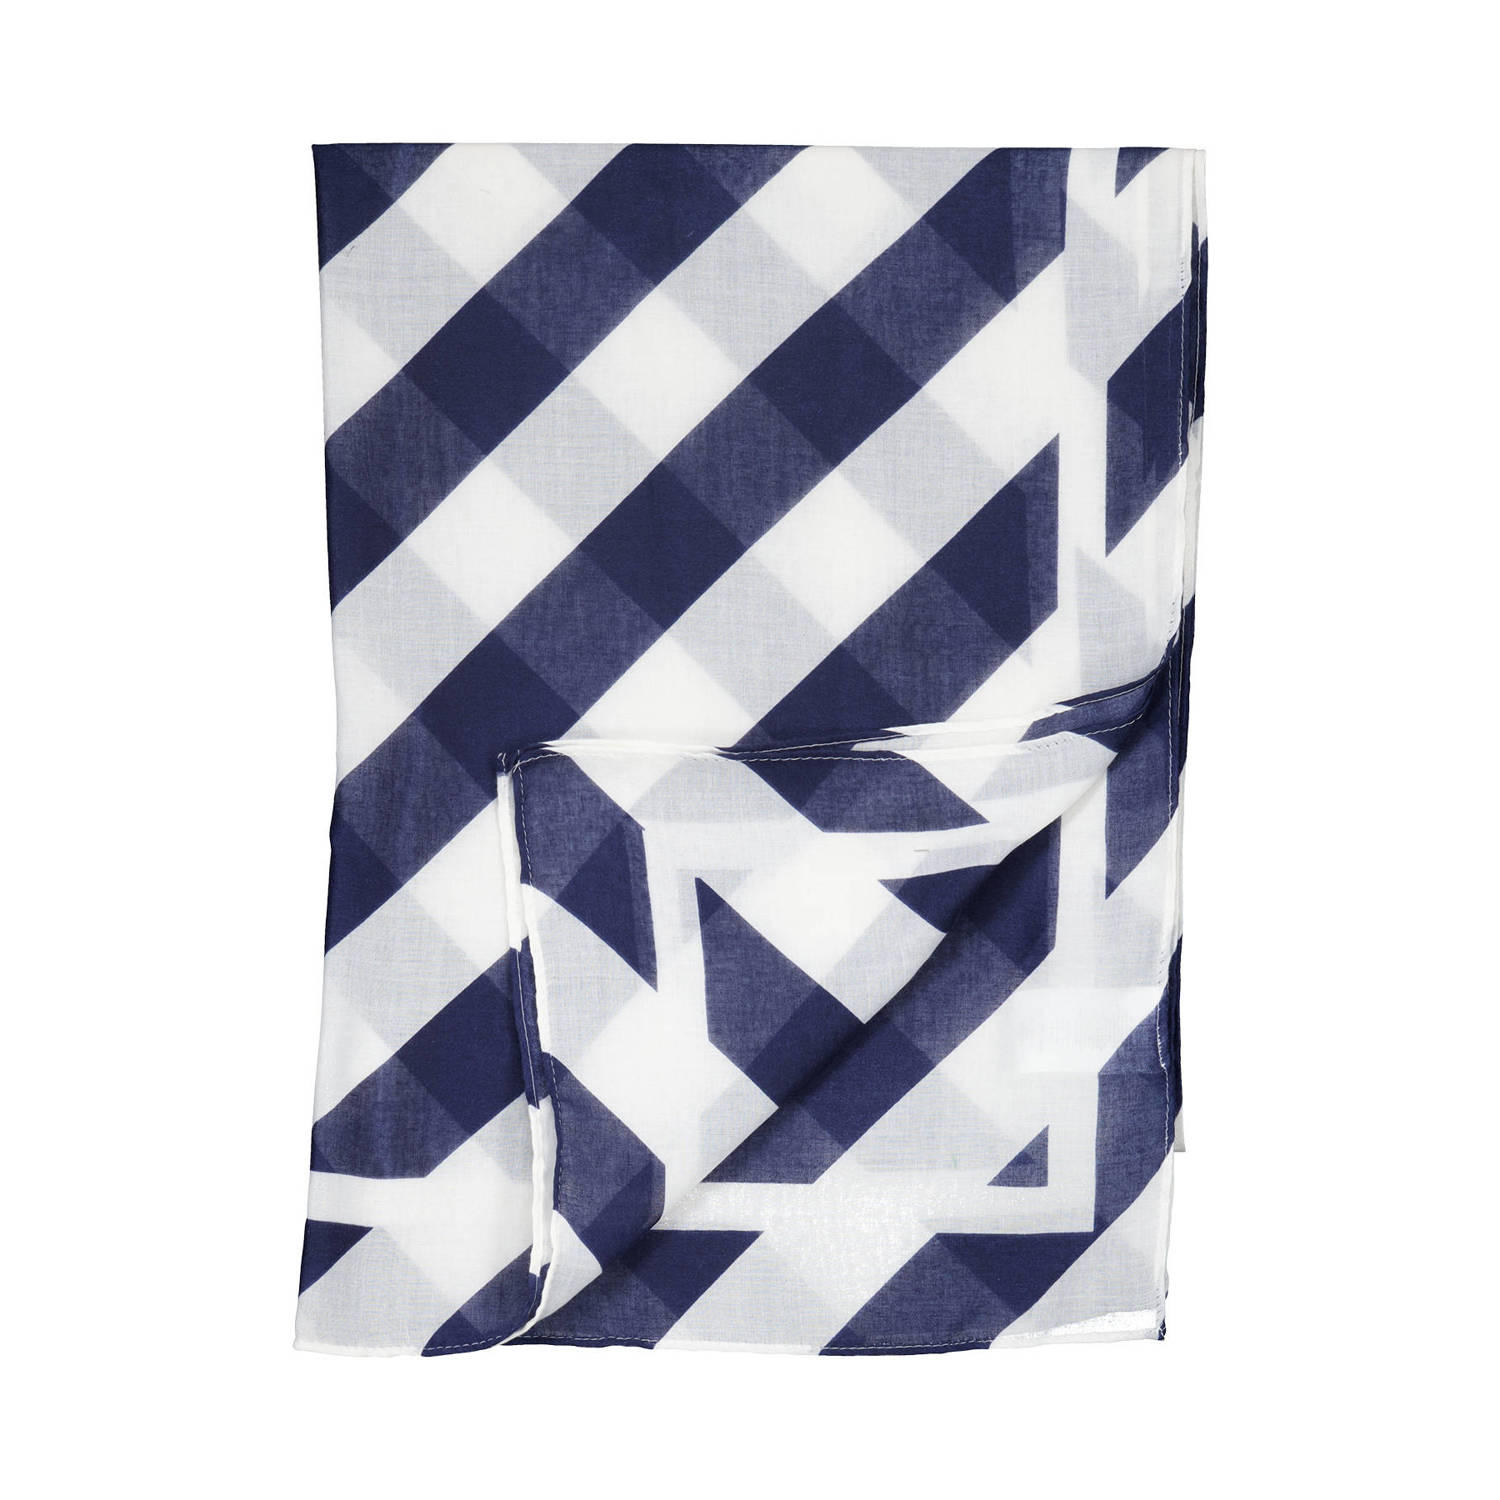 MS Mode sjaal met all over print blauw wit